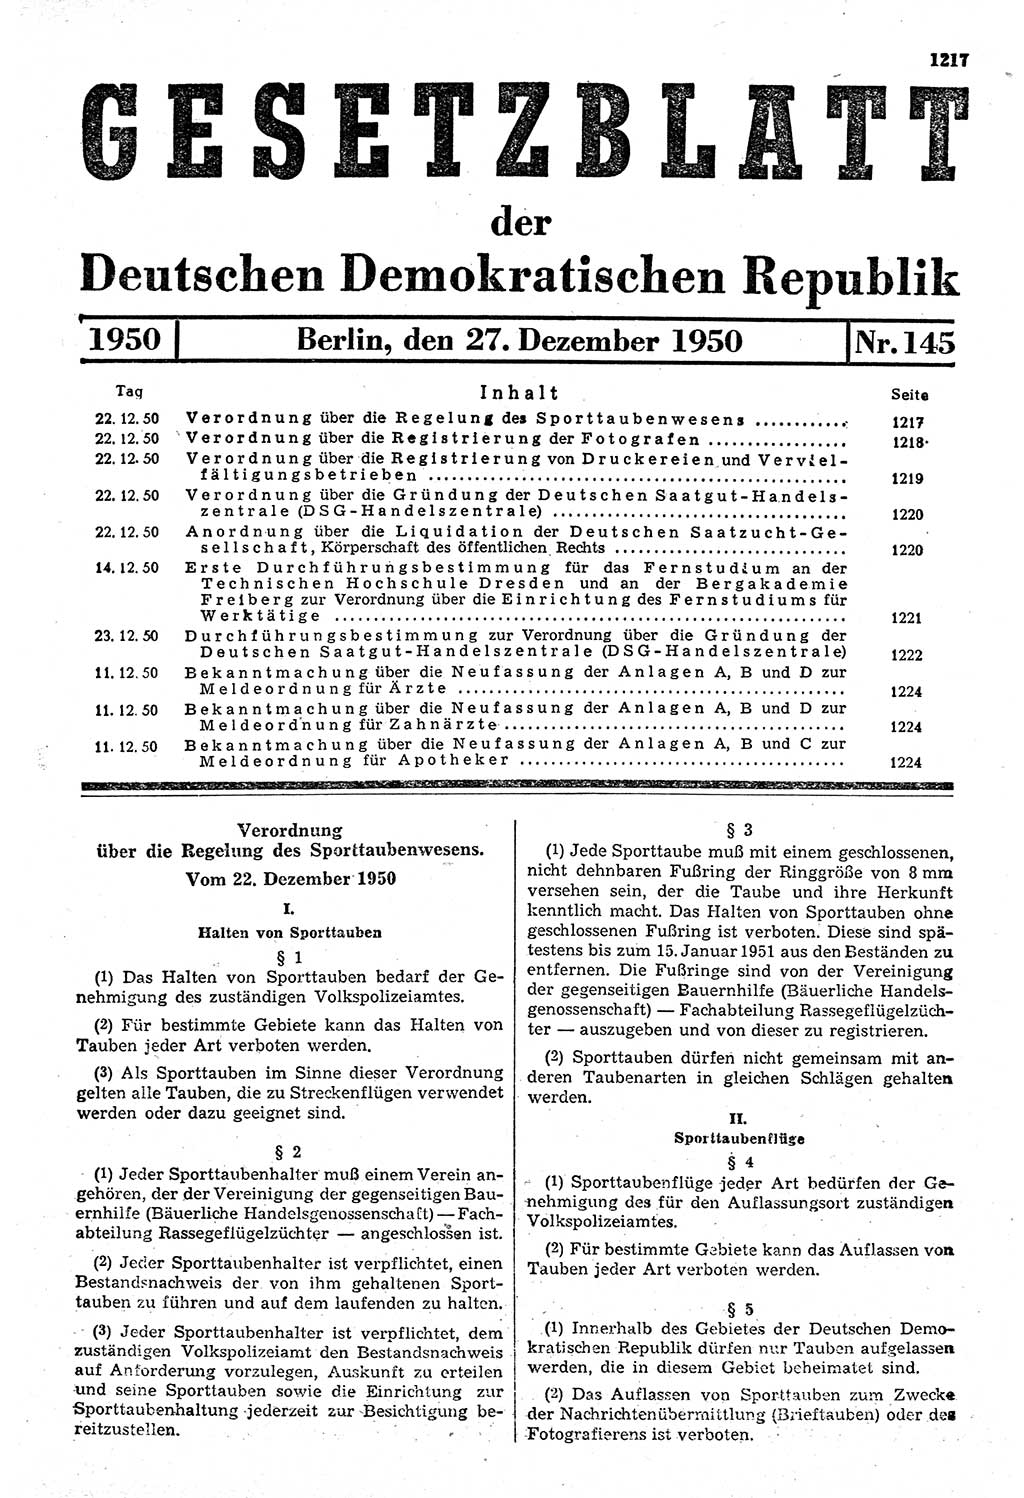 Gesetzblatt (GBl.) der Deutschen Demokratischen Republik (DDR) 1950, Seite 1217 (GBl. DDR 1950, S. 1217)